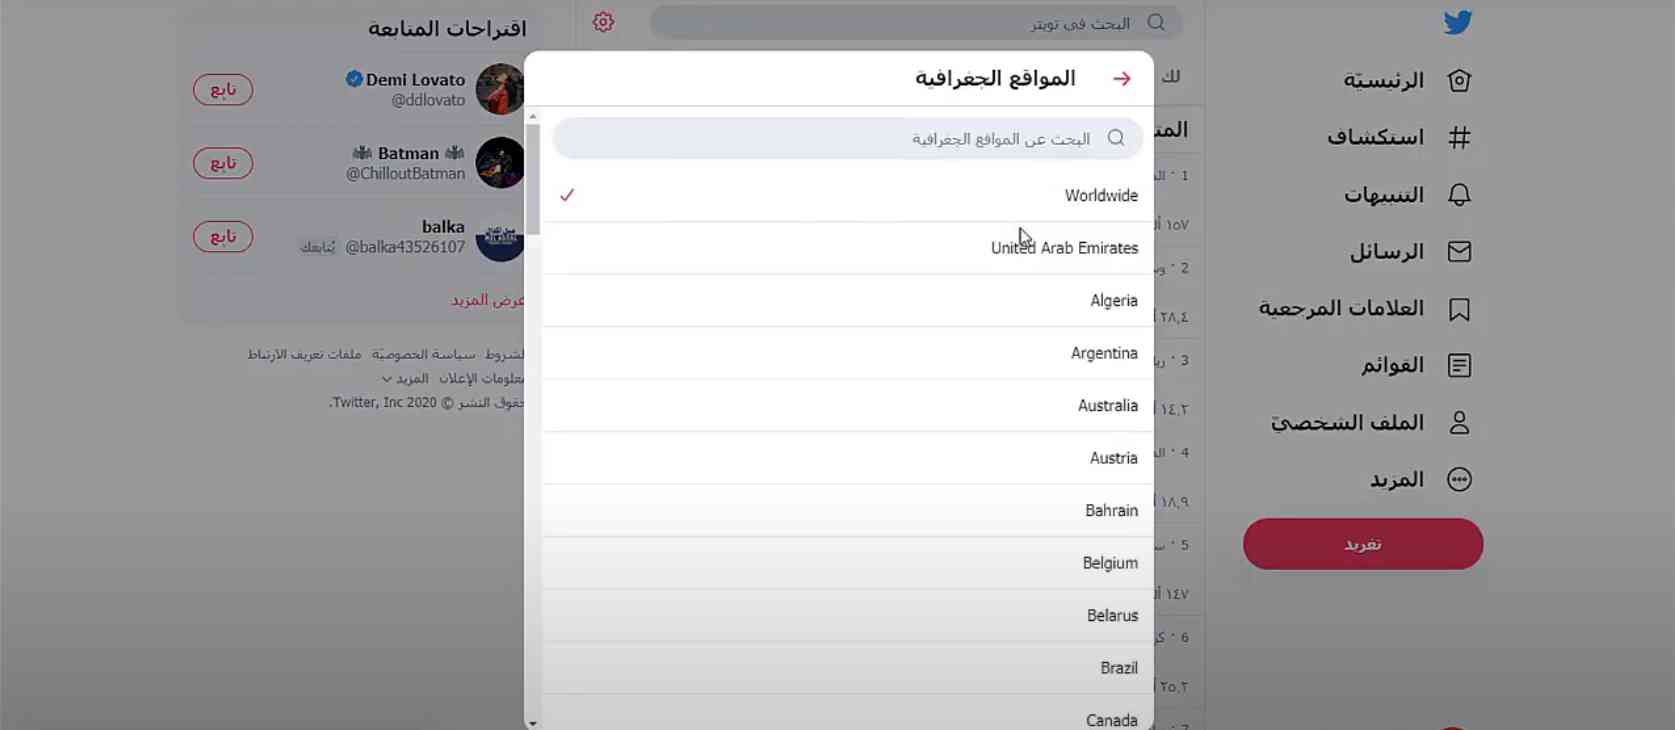 تحميل برنامج تويتر 2021 للكمبيوتر Twitter عربي للهاتف مجانا 2